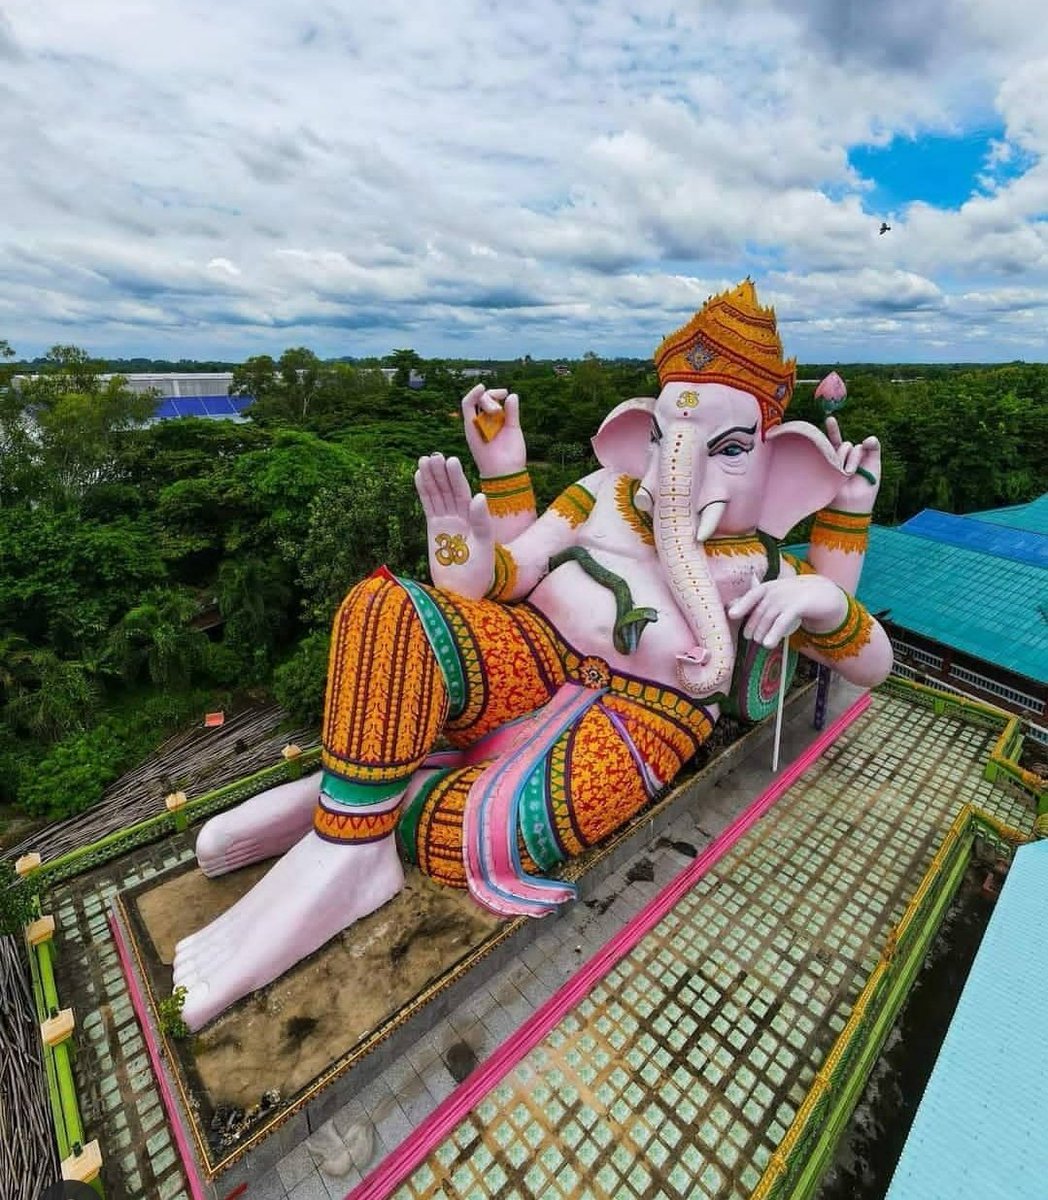 Divine Darshan of Giant Ganesha at Ganesha Park, Nakhon Nayok Province, Thailand.